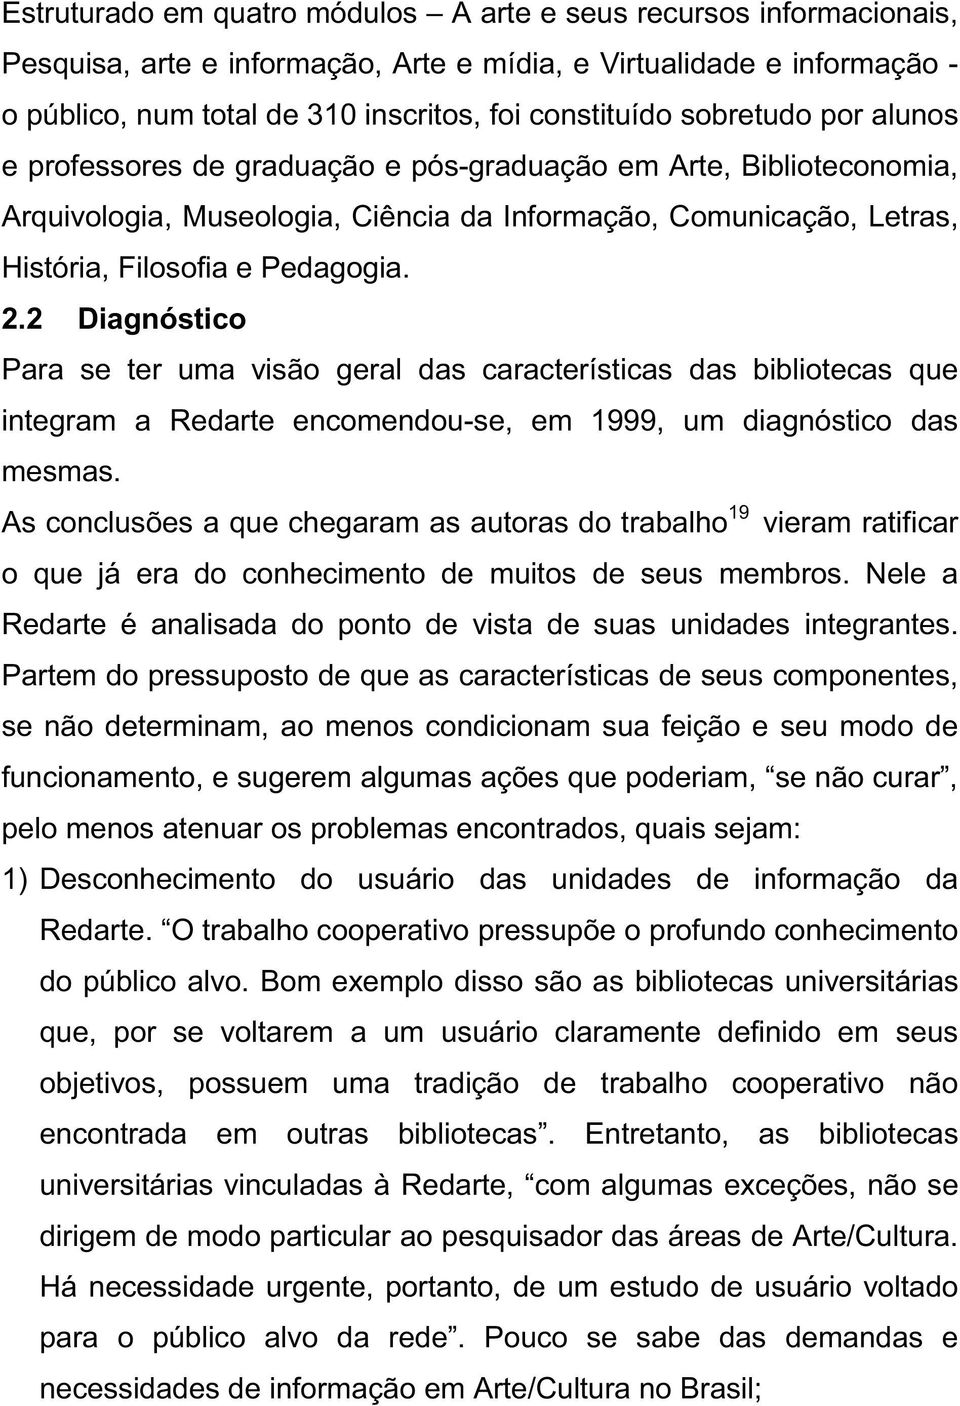 2 Diagnóstico Para se ter uma visão geral das características das bibliotecas que integram a Redarte encomendou-se, em 1999, um diagnóstico das mesmas.